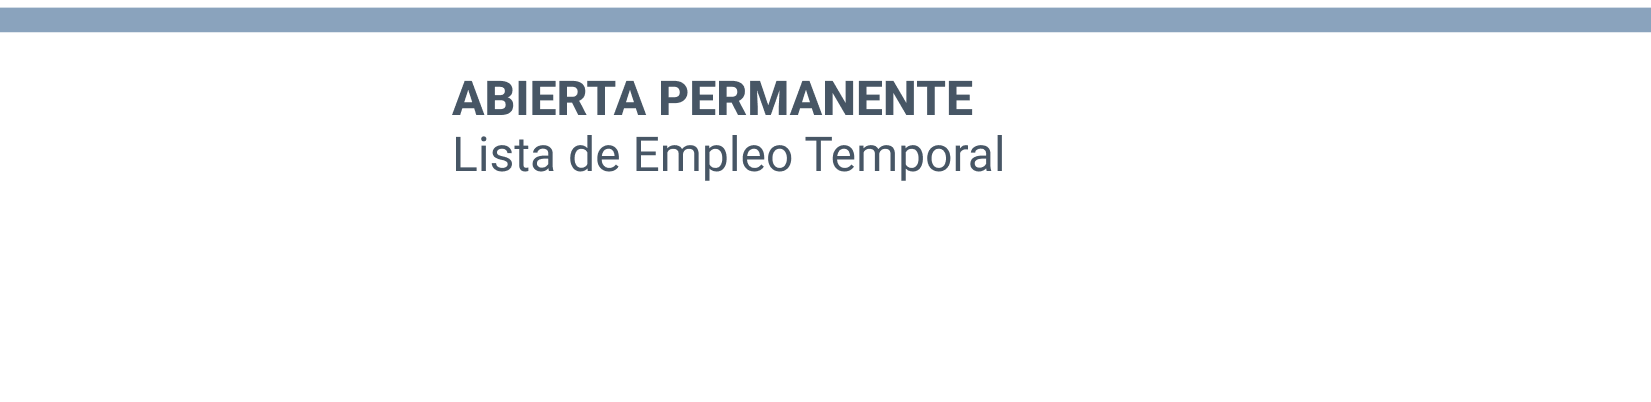 Imagen de cabecera de la sección de inscripción en las listas de ocupación temporal abierta permanente de la Conselleria de Sanidad de la Generalitat Valenciana.